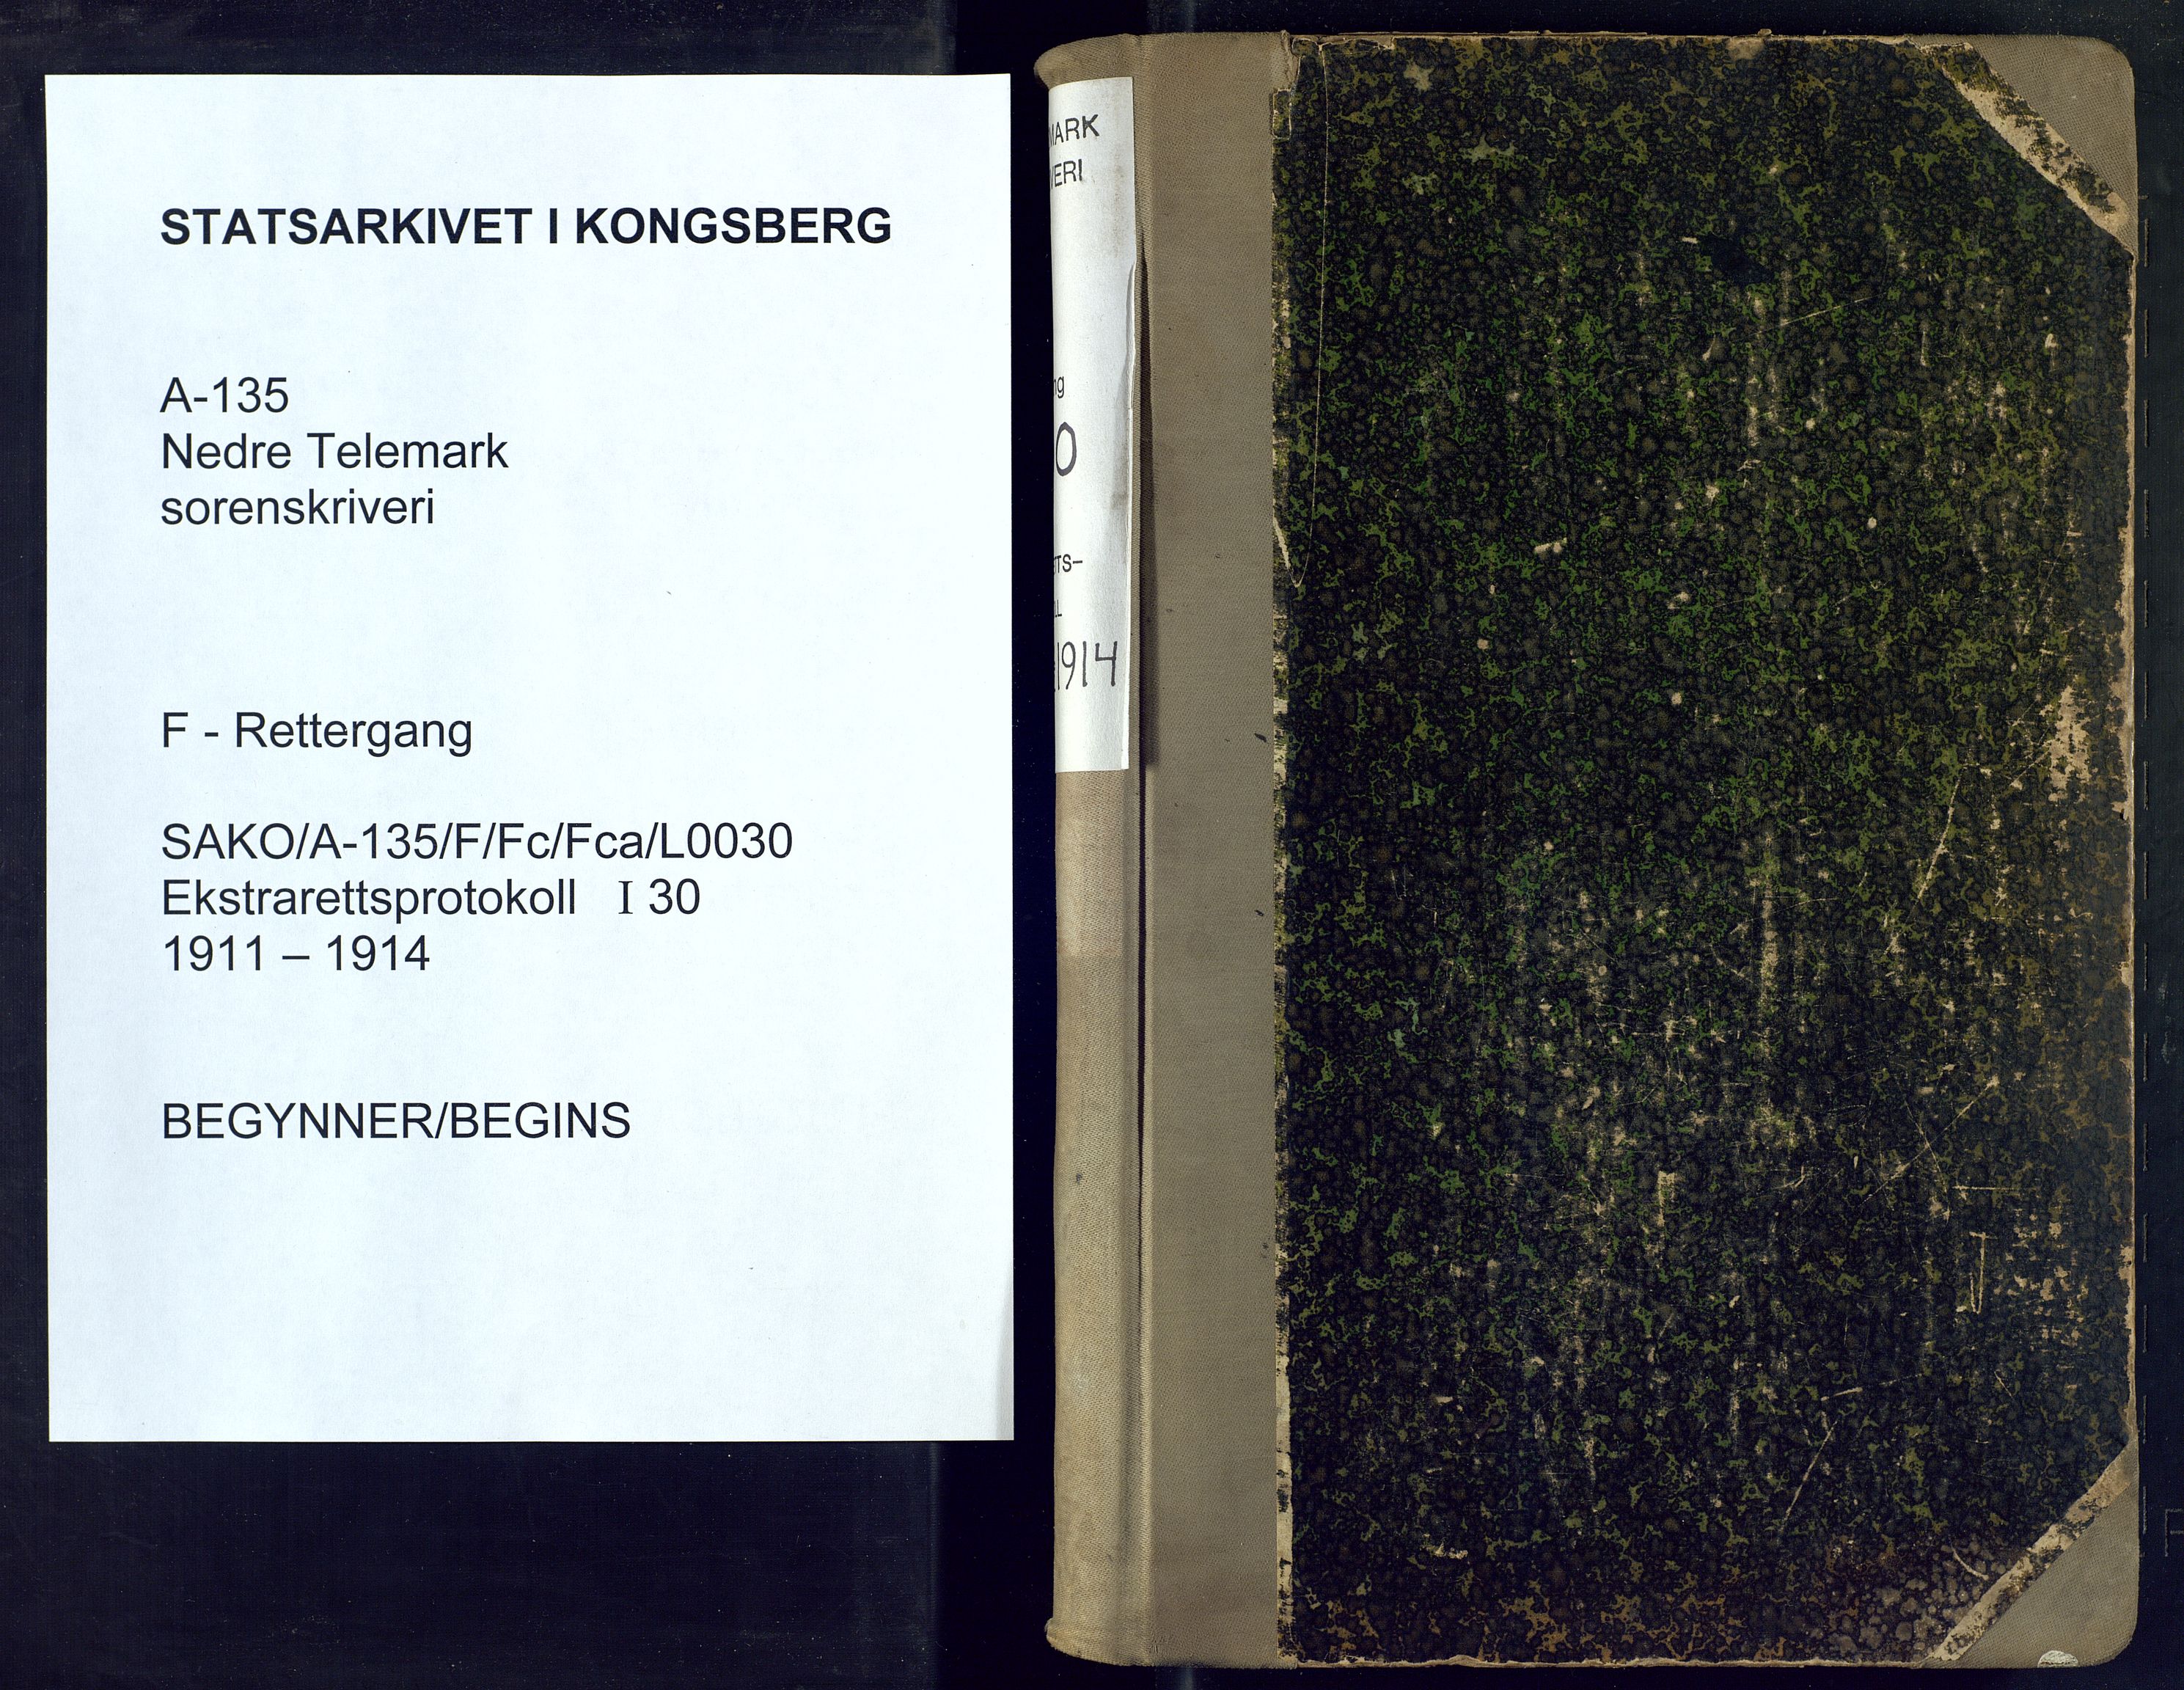 Nedre Telemark sorenskriveri, SAKO/A-135/F/Fc/Fca/L0030: Ekstrarettsprotokoll, 1911-1914